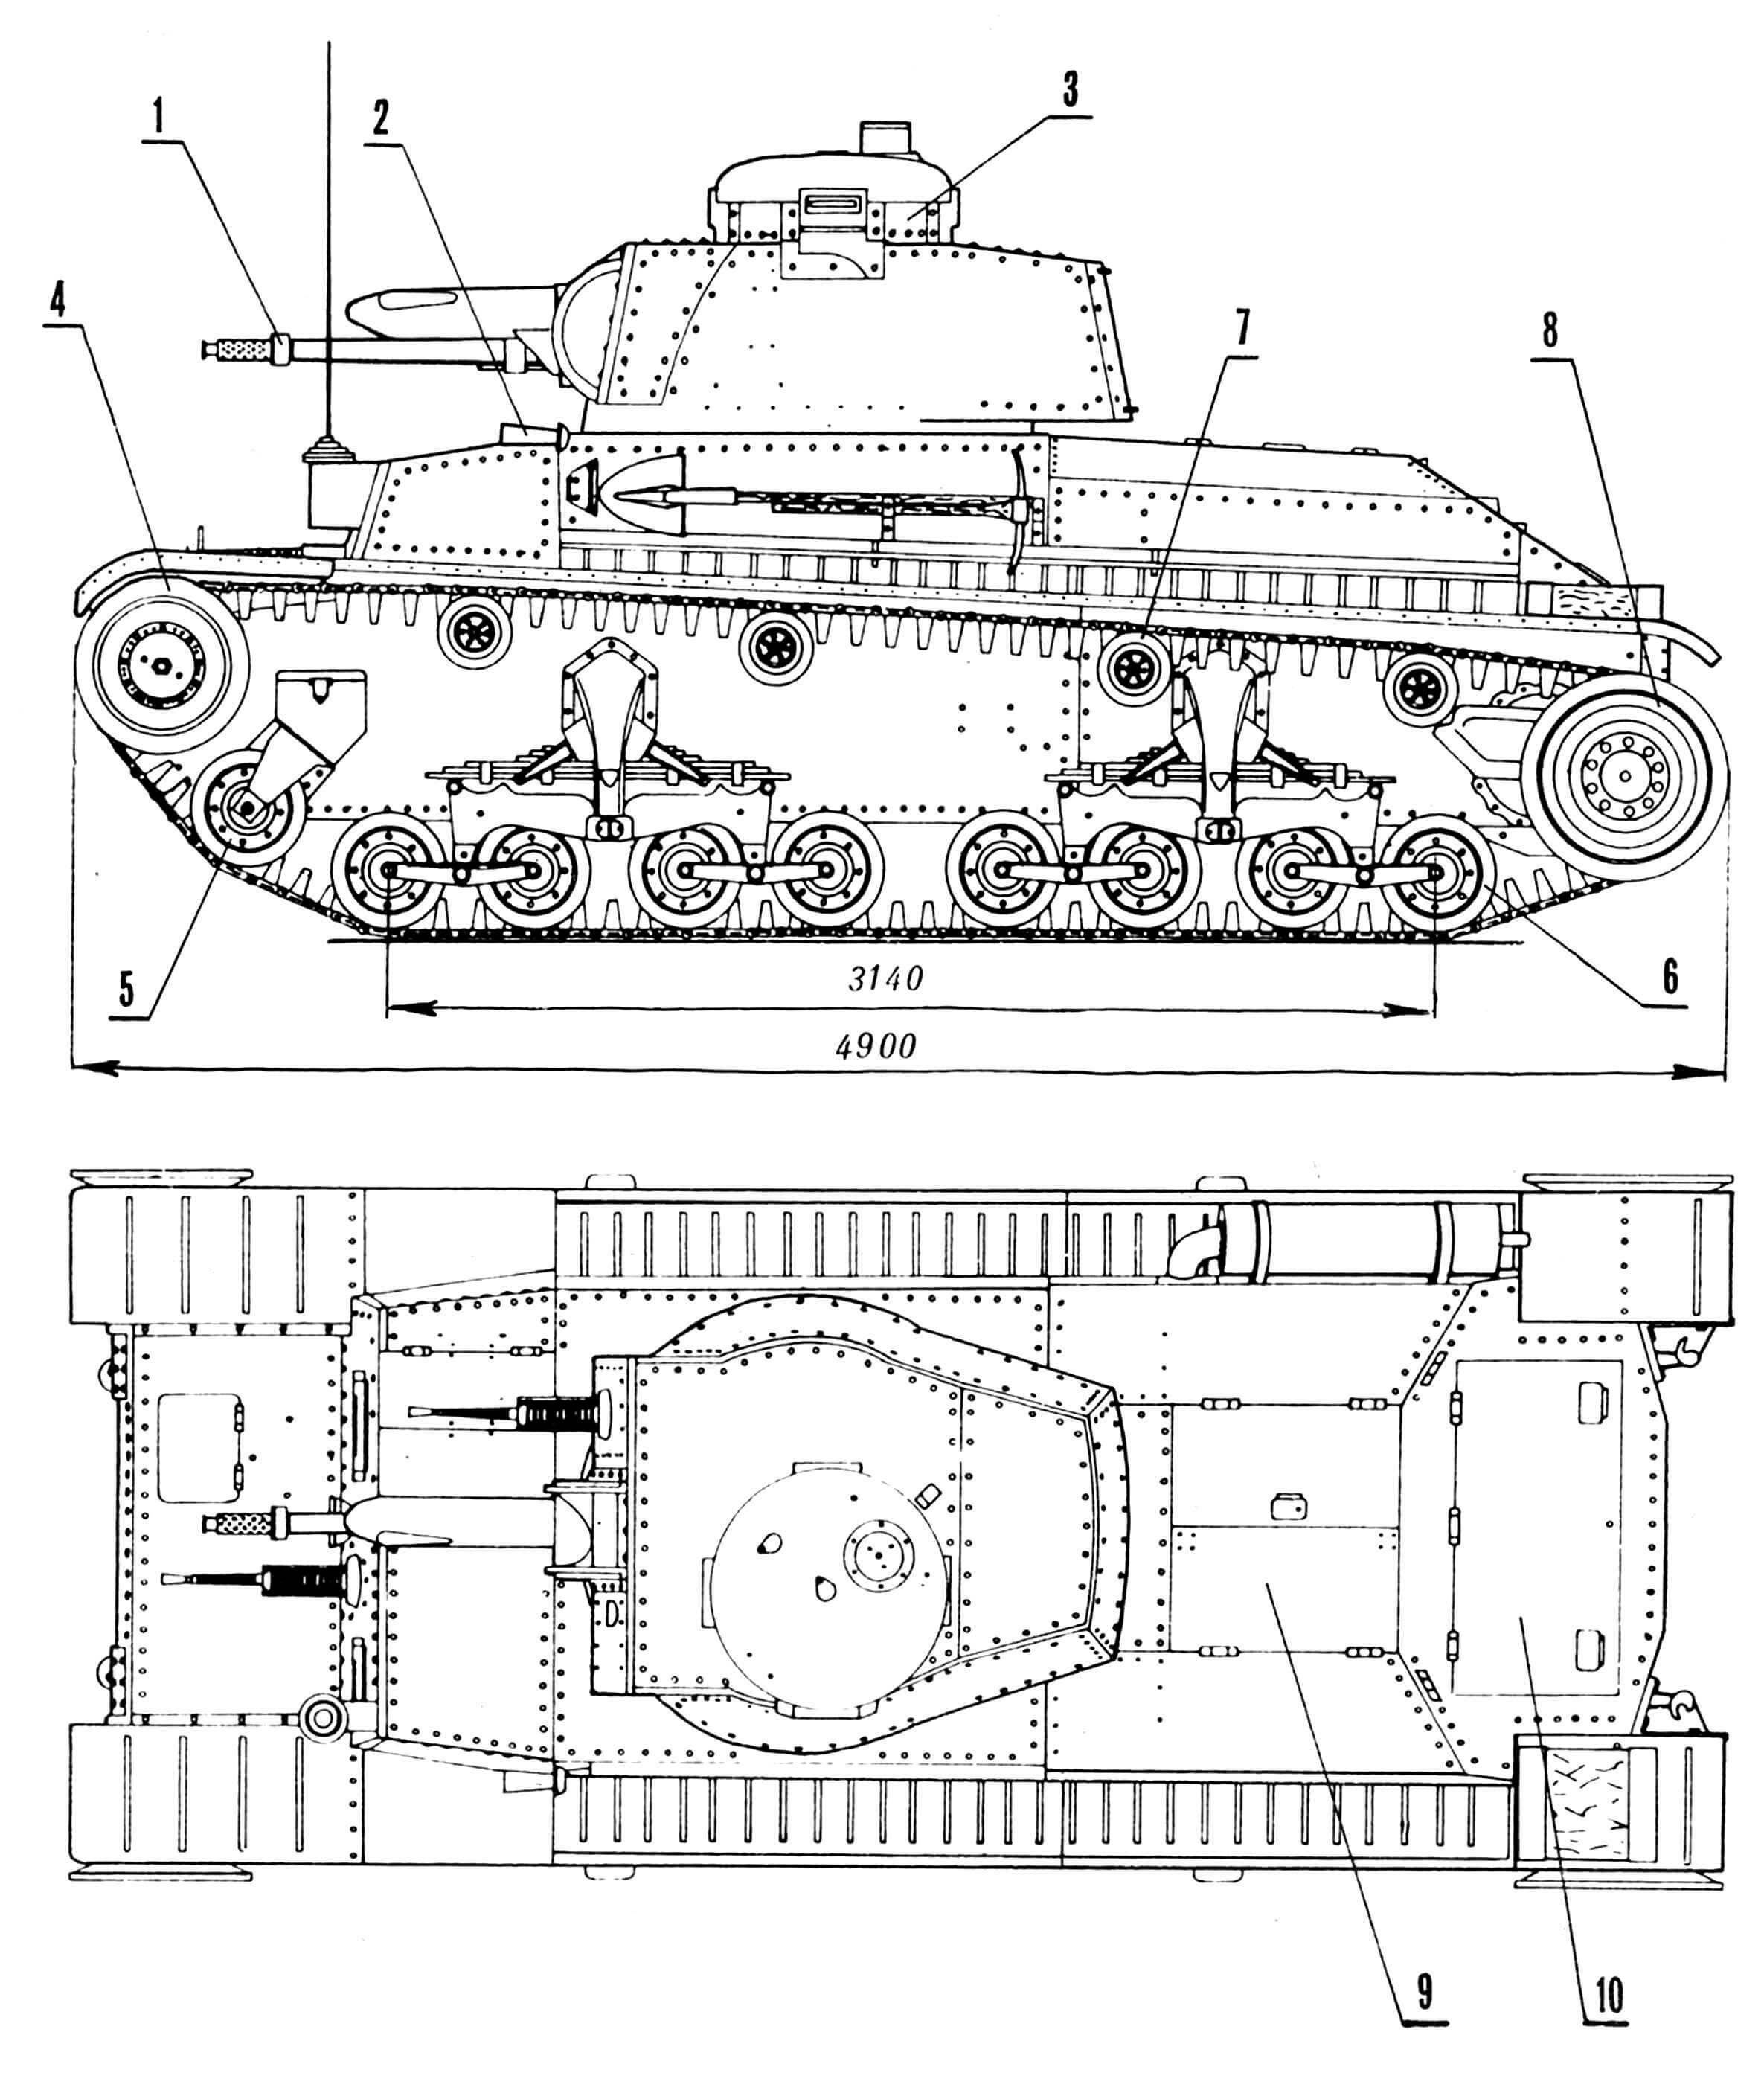 Легкий танк LT vz.35: 1 — 37-мм пушка A-3, 2 — сигнал, 3 — командирская башенка, 4 — направляющее колесо, 5 — упорный каток, 6 — опорный каток, 7 — поддерживающий каток, 8 — ведущее колесо, 9 — крышка люка для доступа к двигателю, 10 — крышка люка для доступа к трансмиссии, 11 — глушитель, 12 — кронштейны тележек подвески, 13 — кронштейн упорного катка, 14 — фара, 15 — крышка люка механика-водителя, 16 — смотровой лючок механика-водителя, 17 — бронировка выхода антенны, 18 — смотровой лючок стрелка-радиста, 19 — 7,92-мм пулемет ZB 53 vz.35, 20 — курсовой визир механика-водителя, 21 — грязевик (на общем виде условно не показан), 22 — буксирные крюки, 23 — смотровая щель, 24 — вентилятор, 25 — упор для крышки люка.